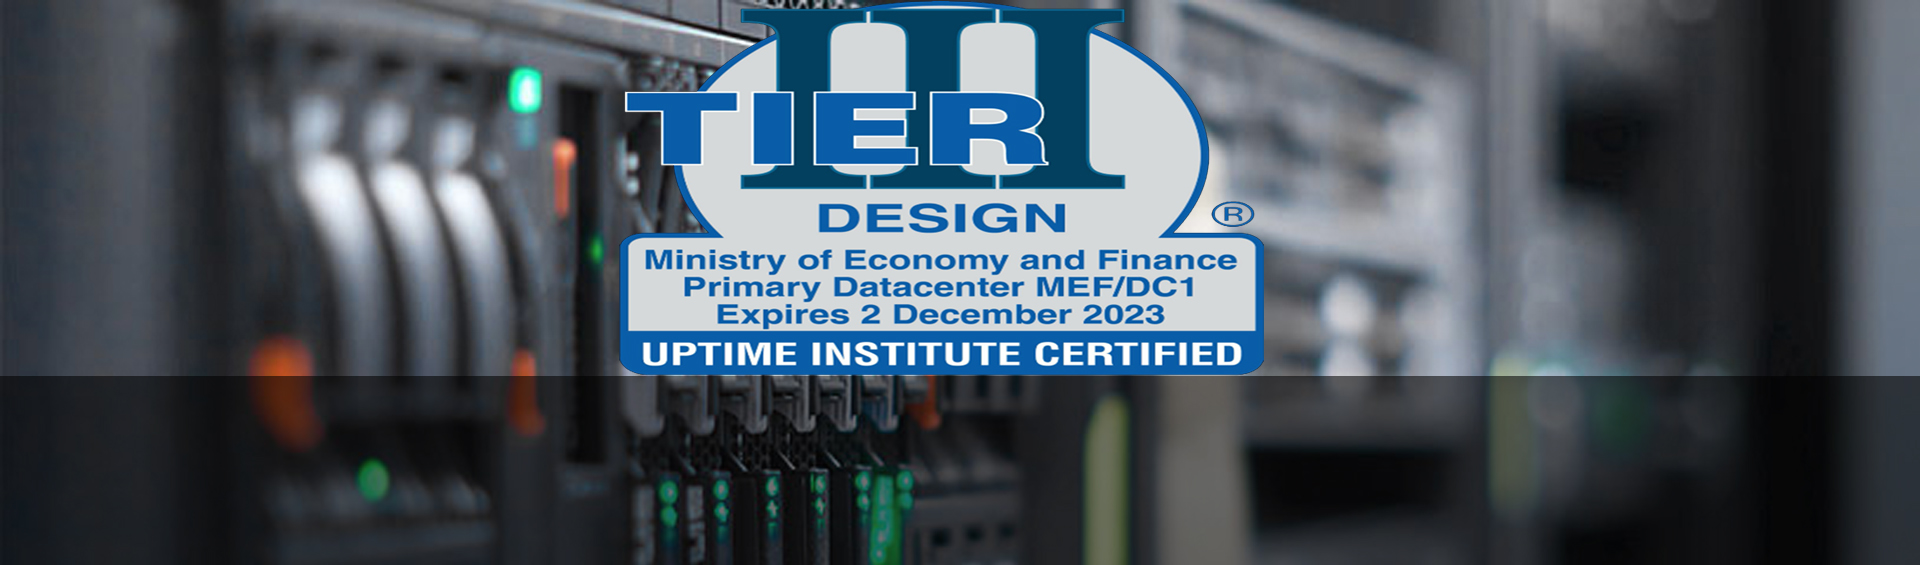 El Ministerio de Economía y Finanzas obtiene la certificación "TIer III" de "Uptime Institute" para su Centro de Datos